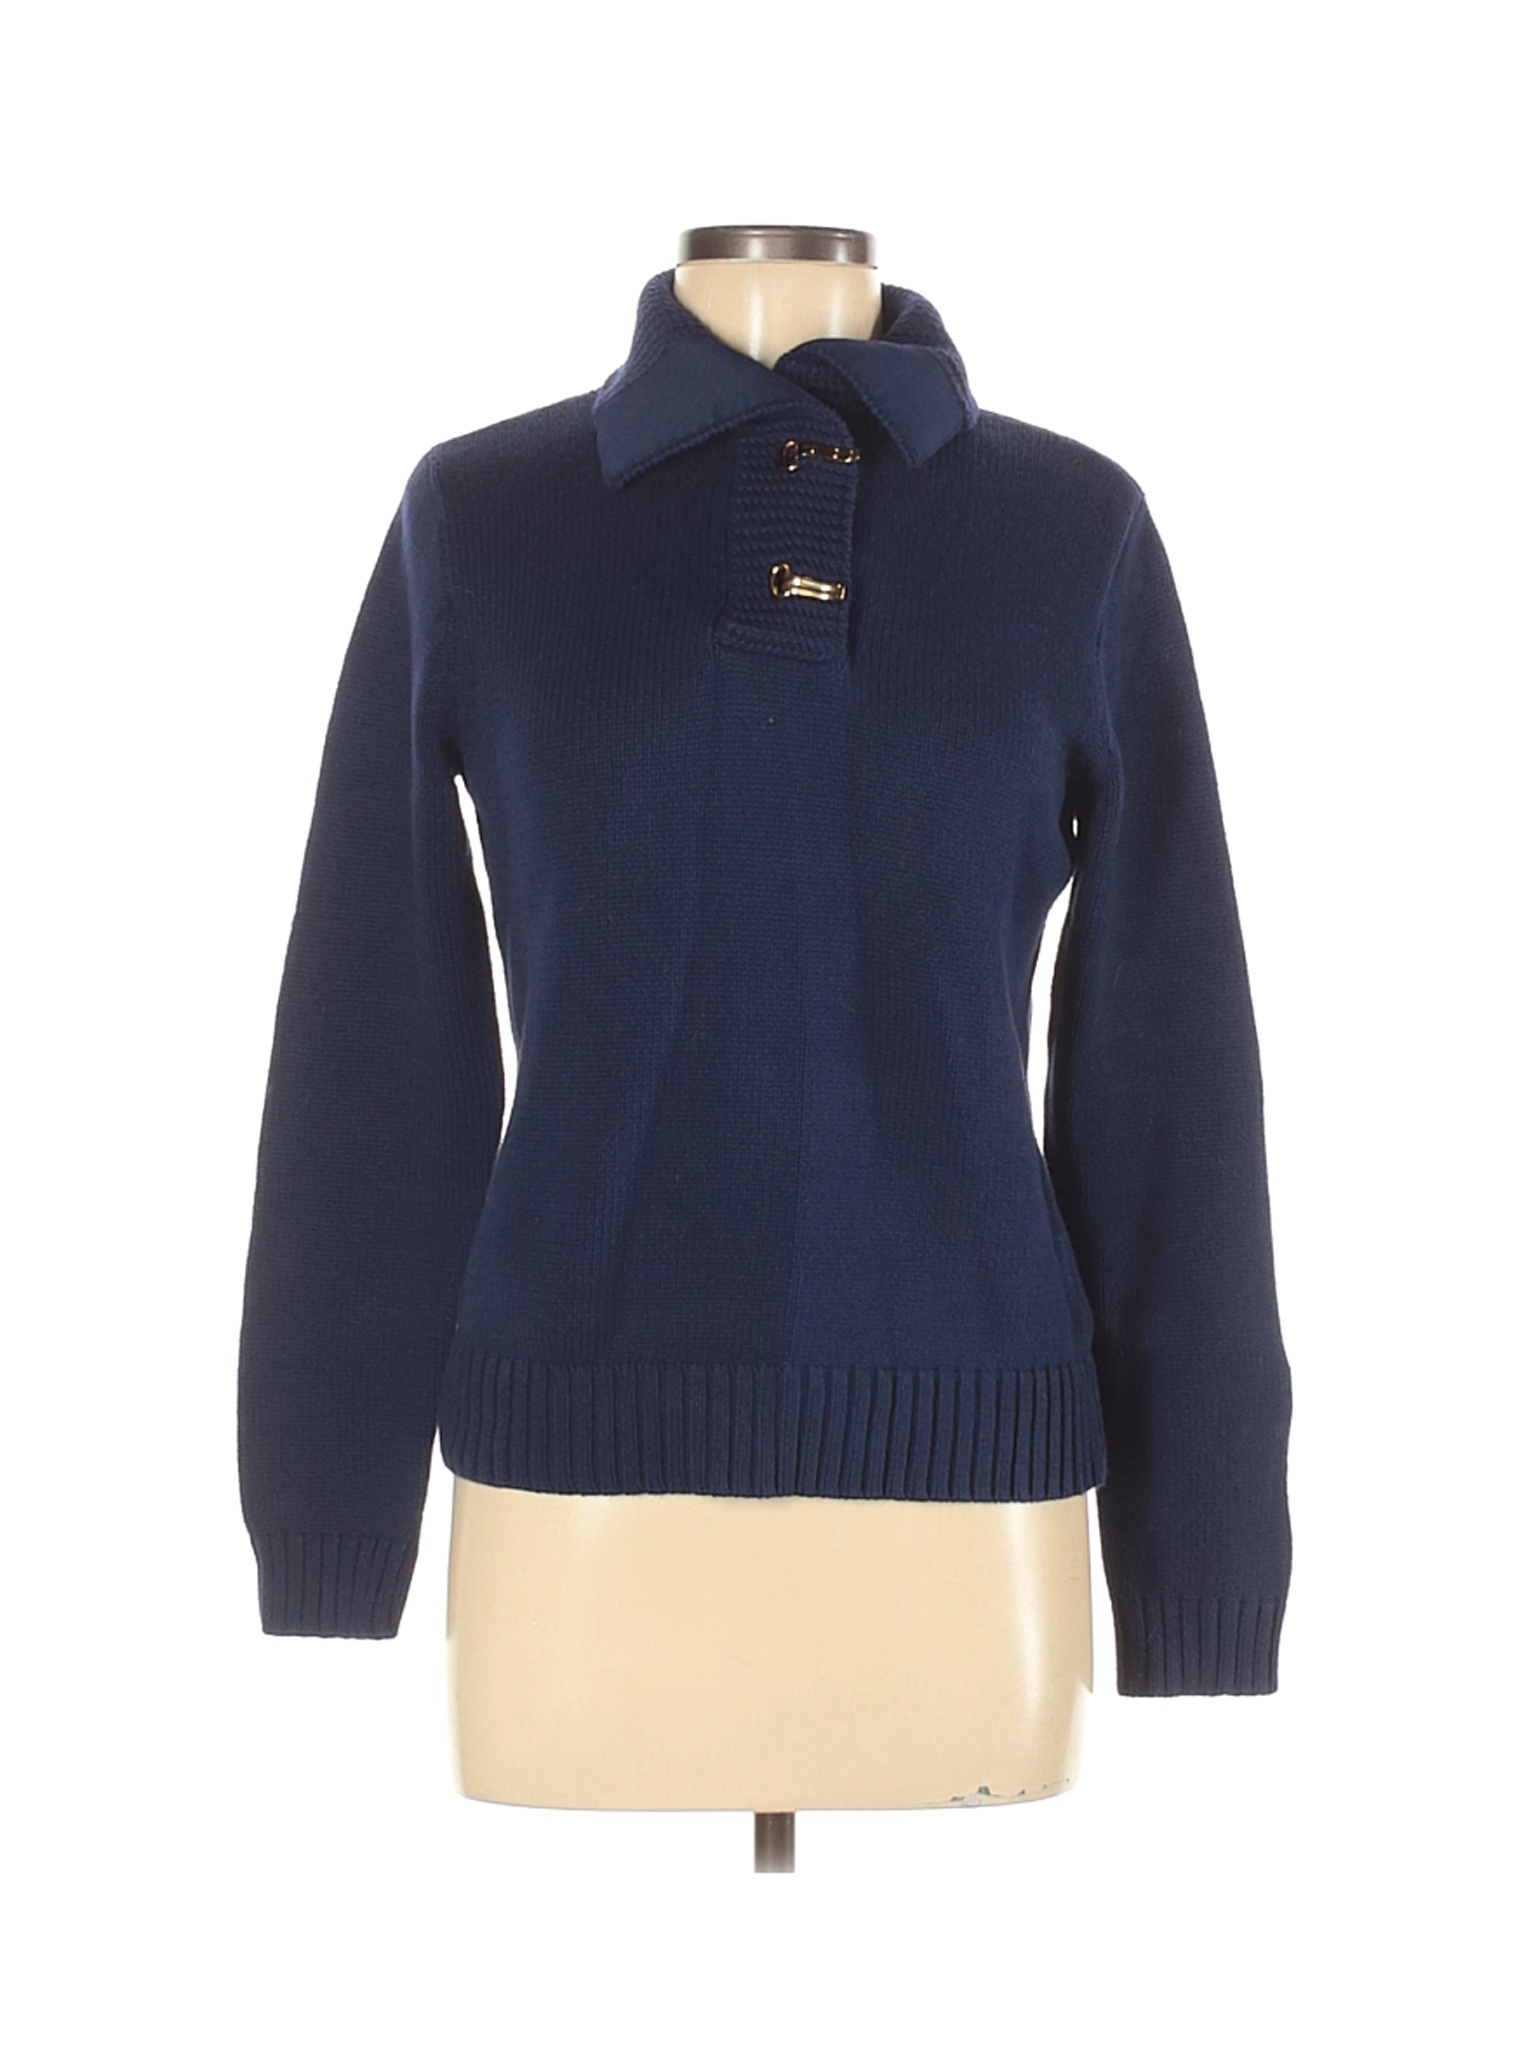 Lauren Jeans Co. Women Blue Pullover Sweater M | eBay